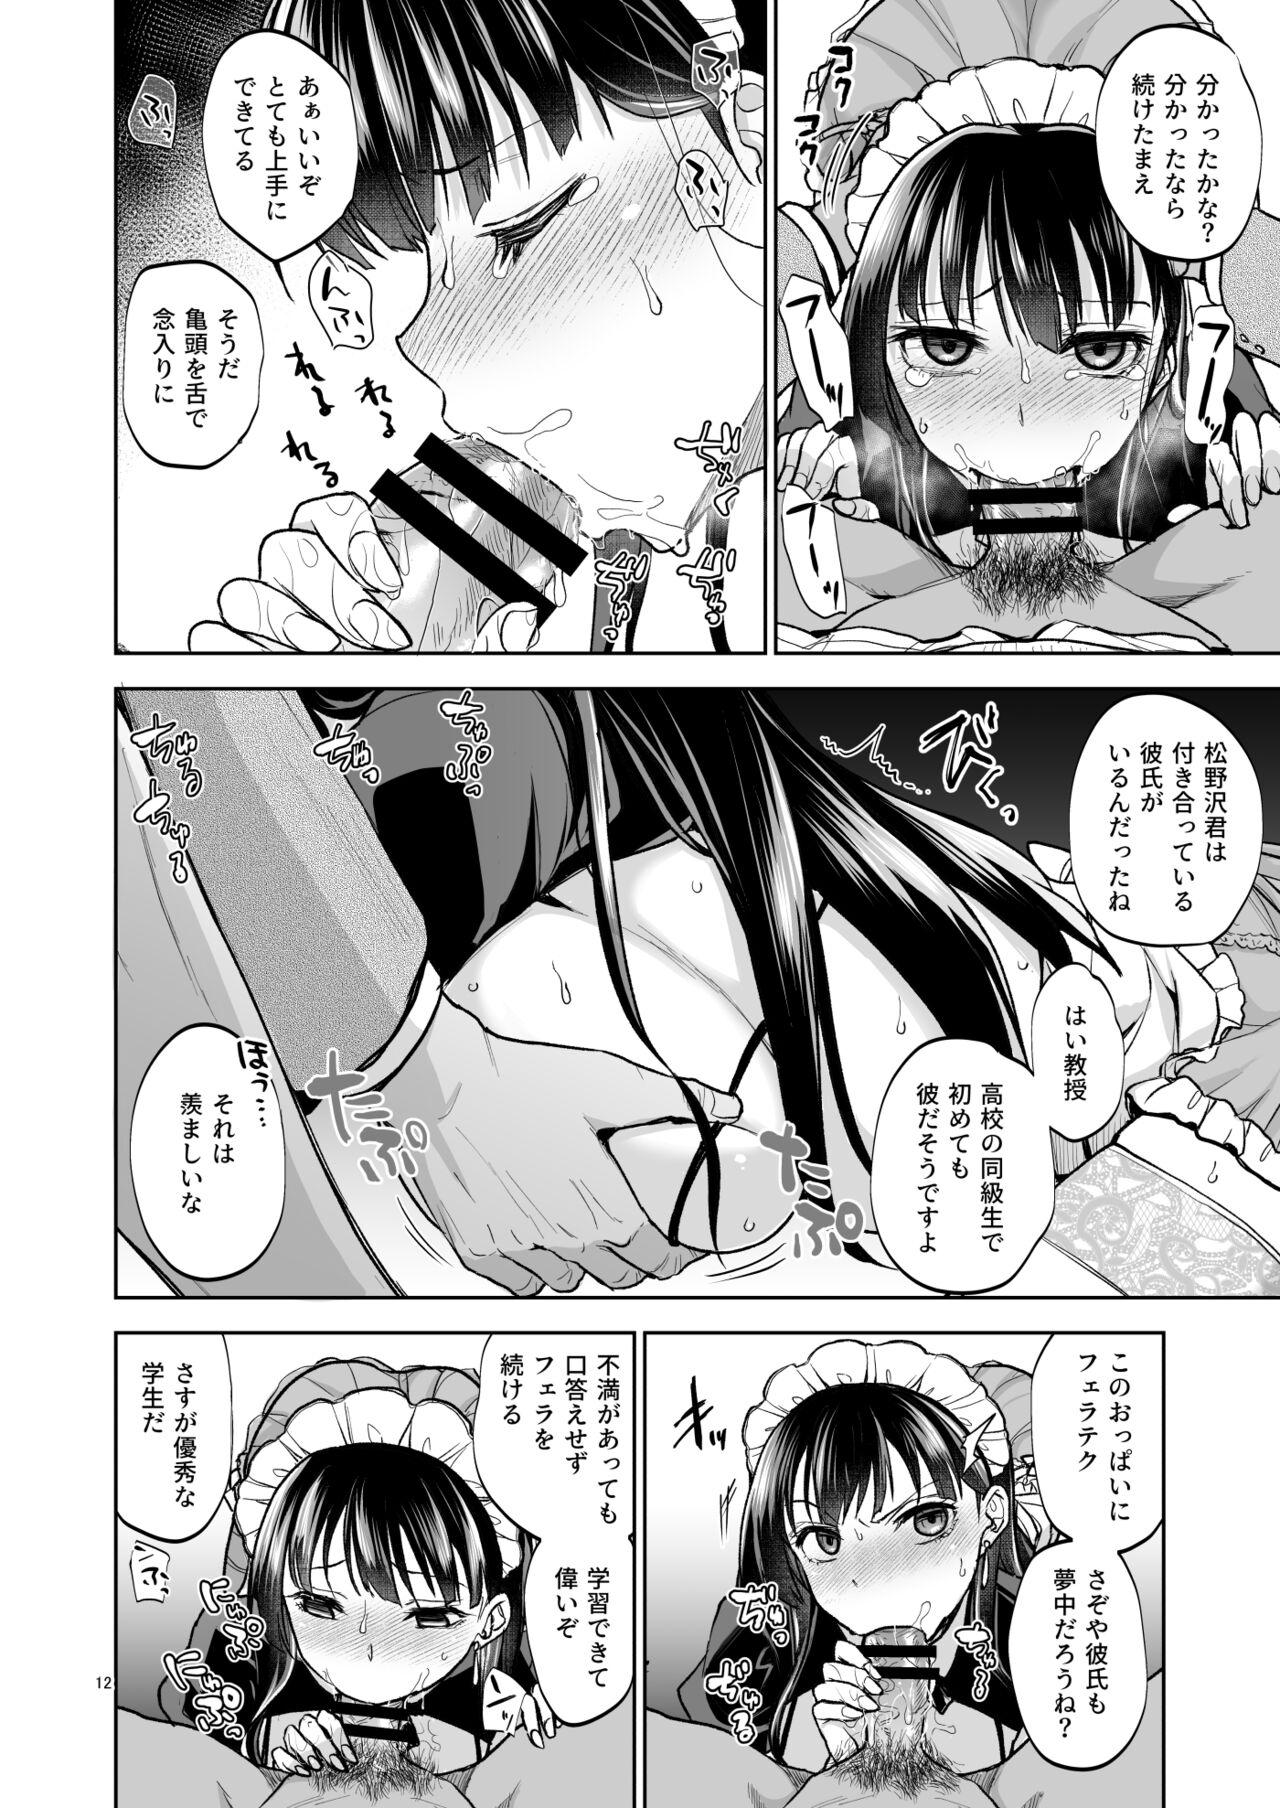 Peluda Omoide wa Yogosareru 2 - Original Amadora - Page 11